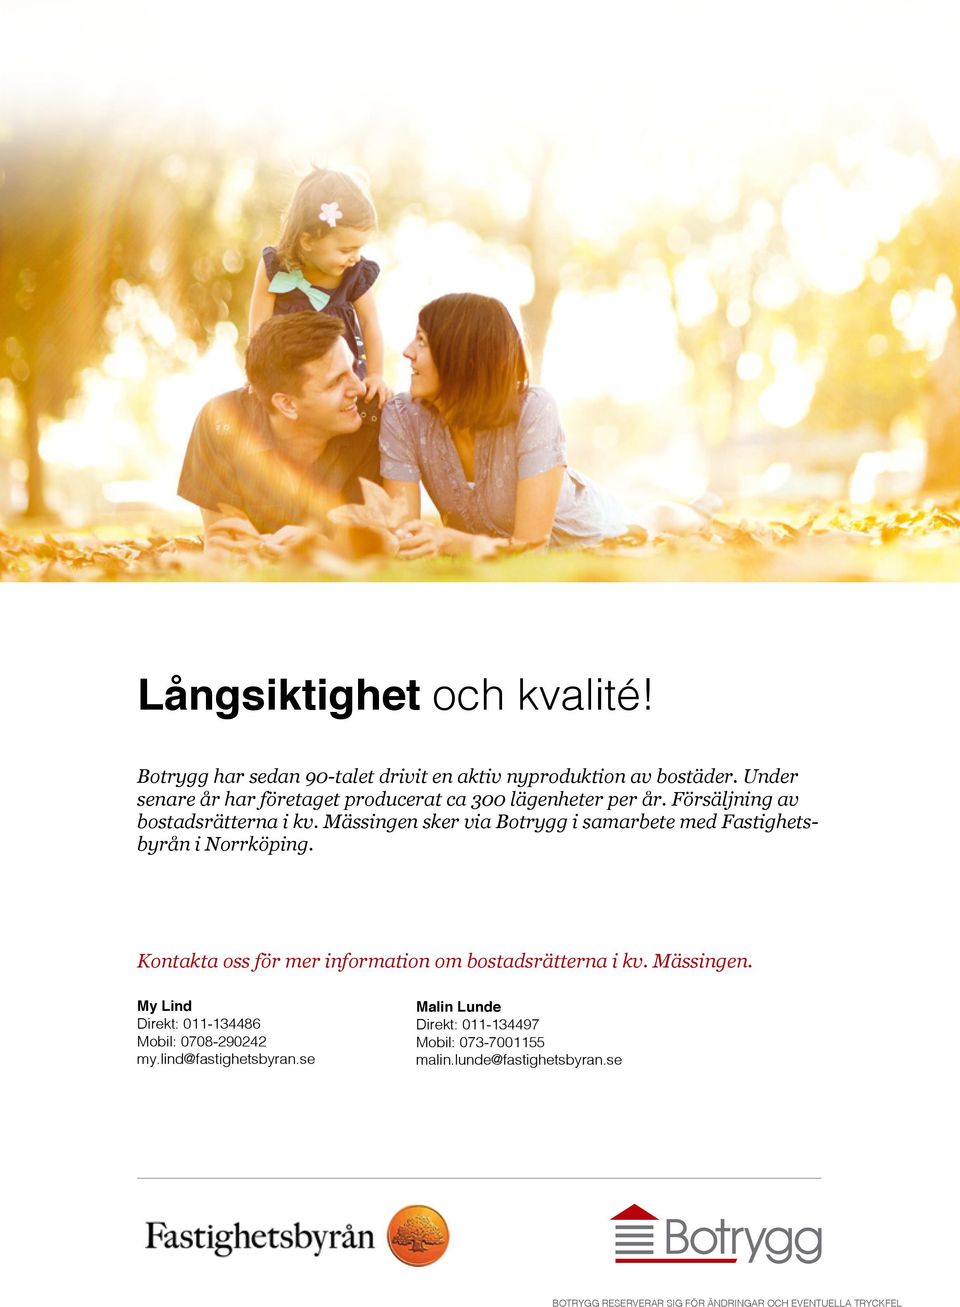 Mässingen sker via Botrygg i samarbete med Fastighetsbyrån i Norrköping. Kontakta oss för mer information om bostadsrätterna i kv.